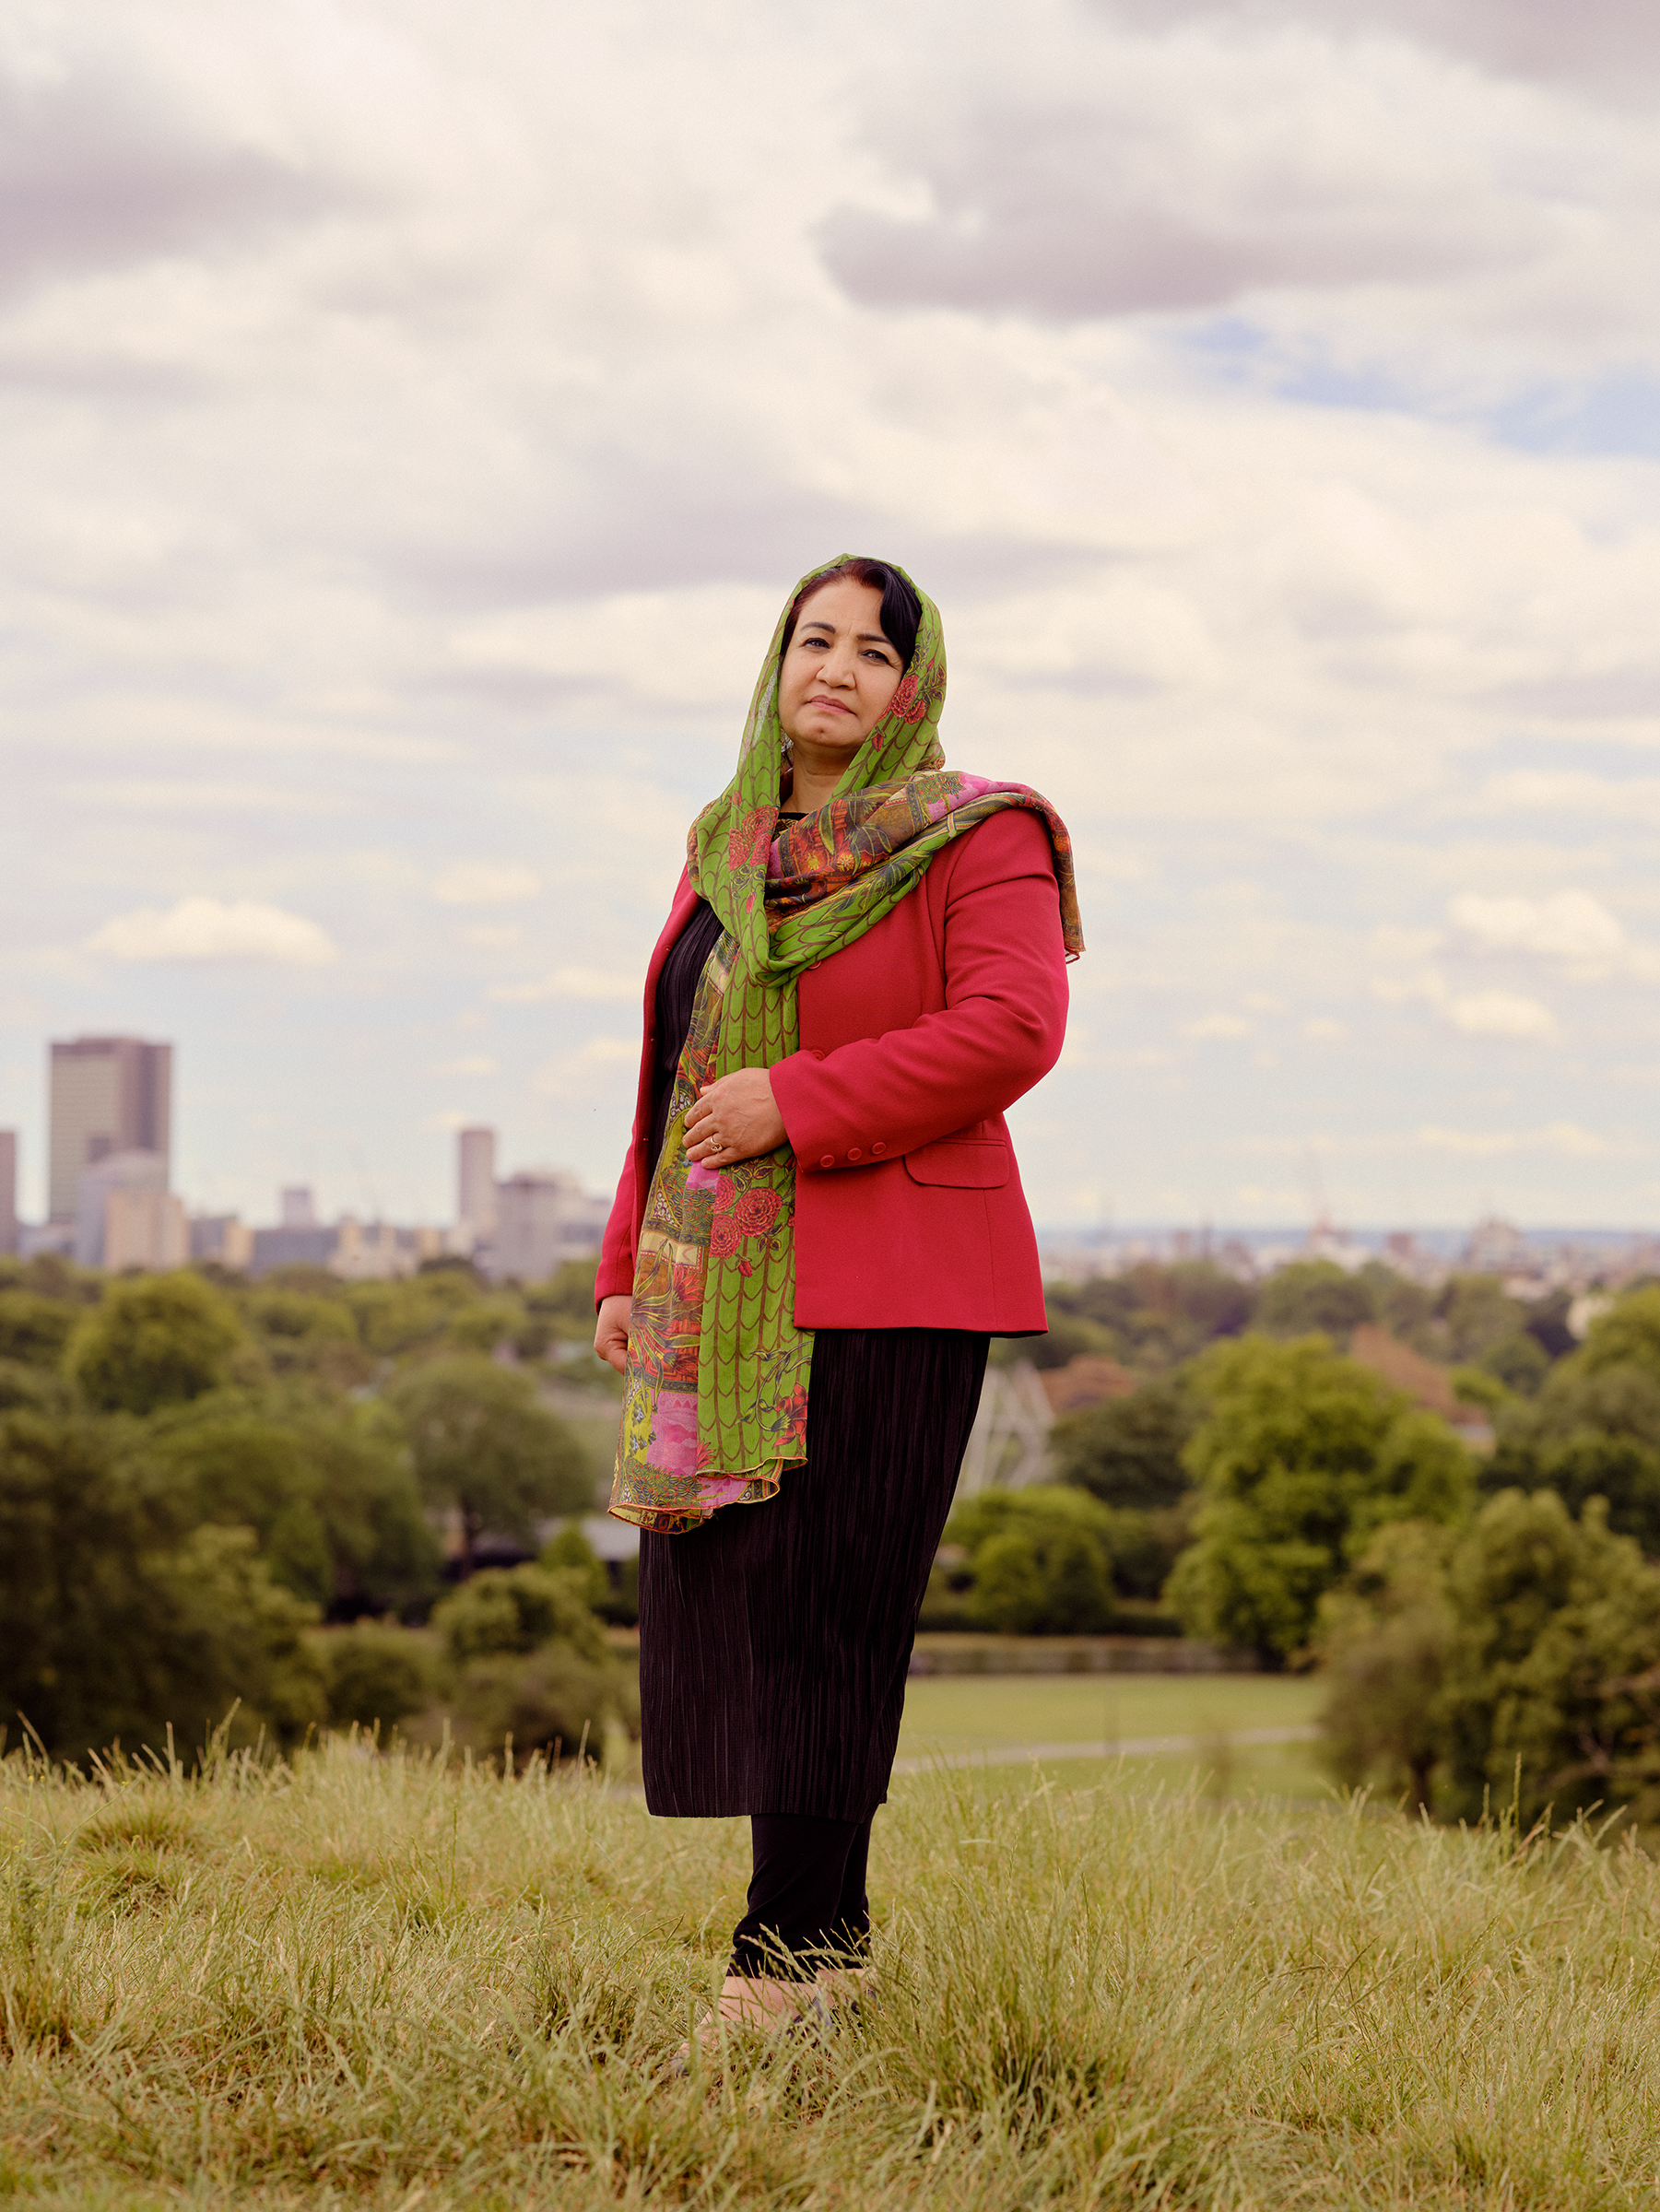 Sahra Alizai stands in the park in London